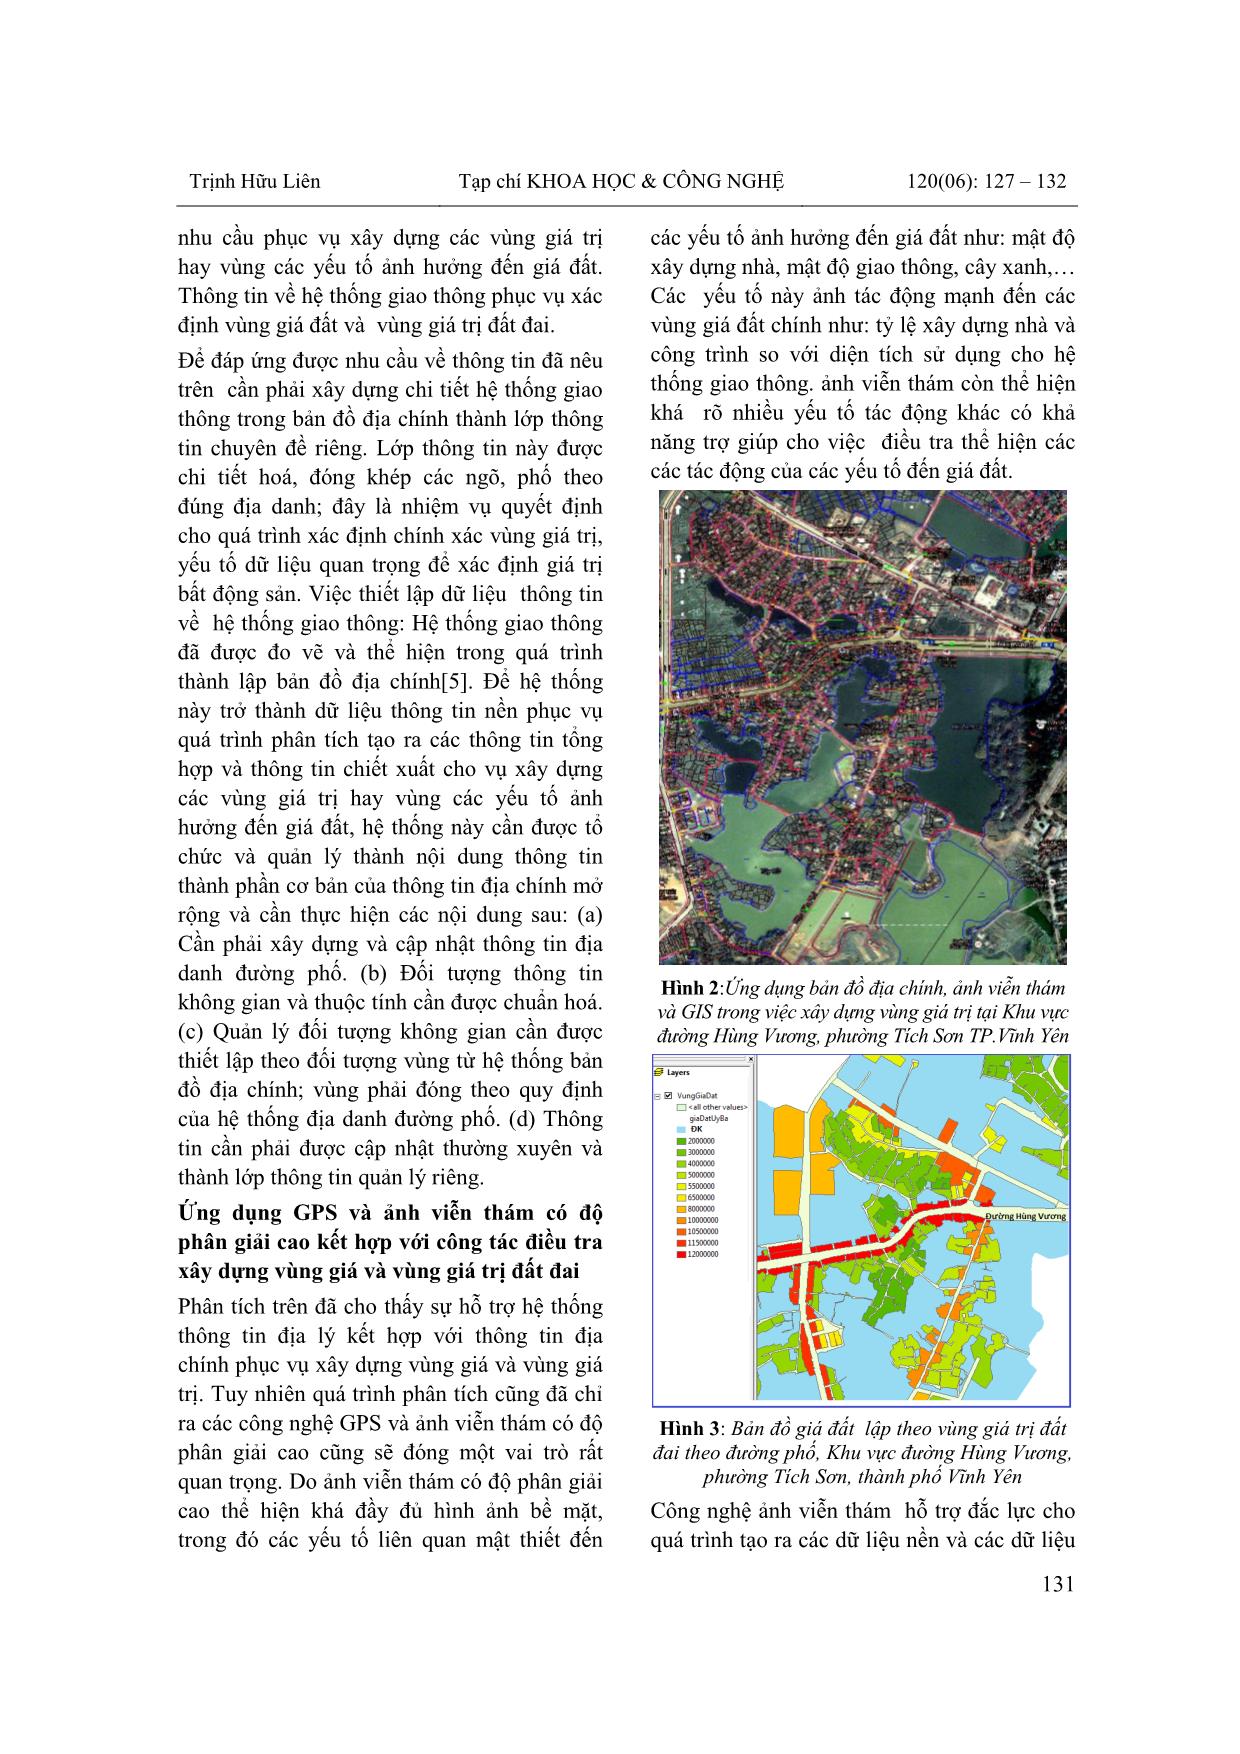 Kỹ thuật xây dựng vùng giá đất, vùng giá trị đất đai phục vụ định giá đất, trên cơ sở dữ liệu địa chính, công nghệ GIS và ảnh viễn thám trang 5